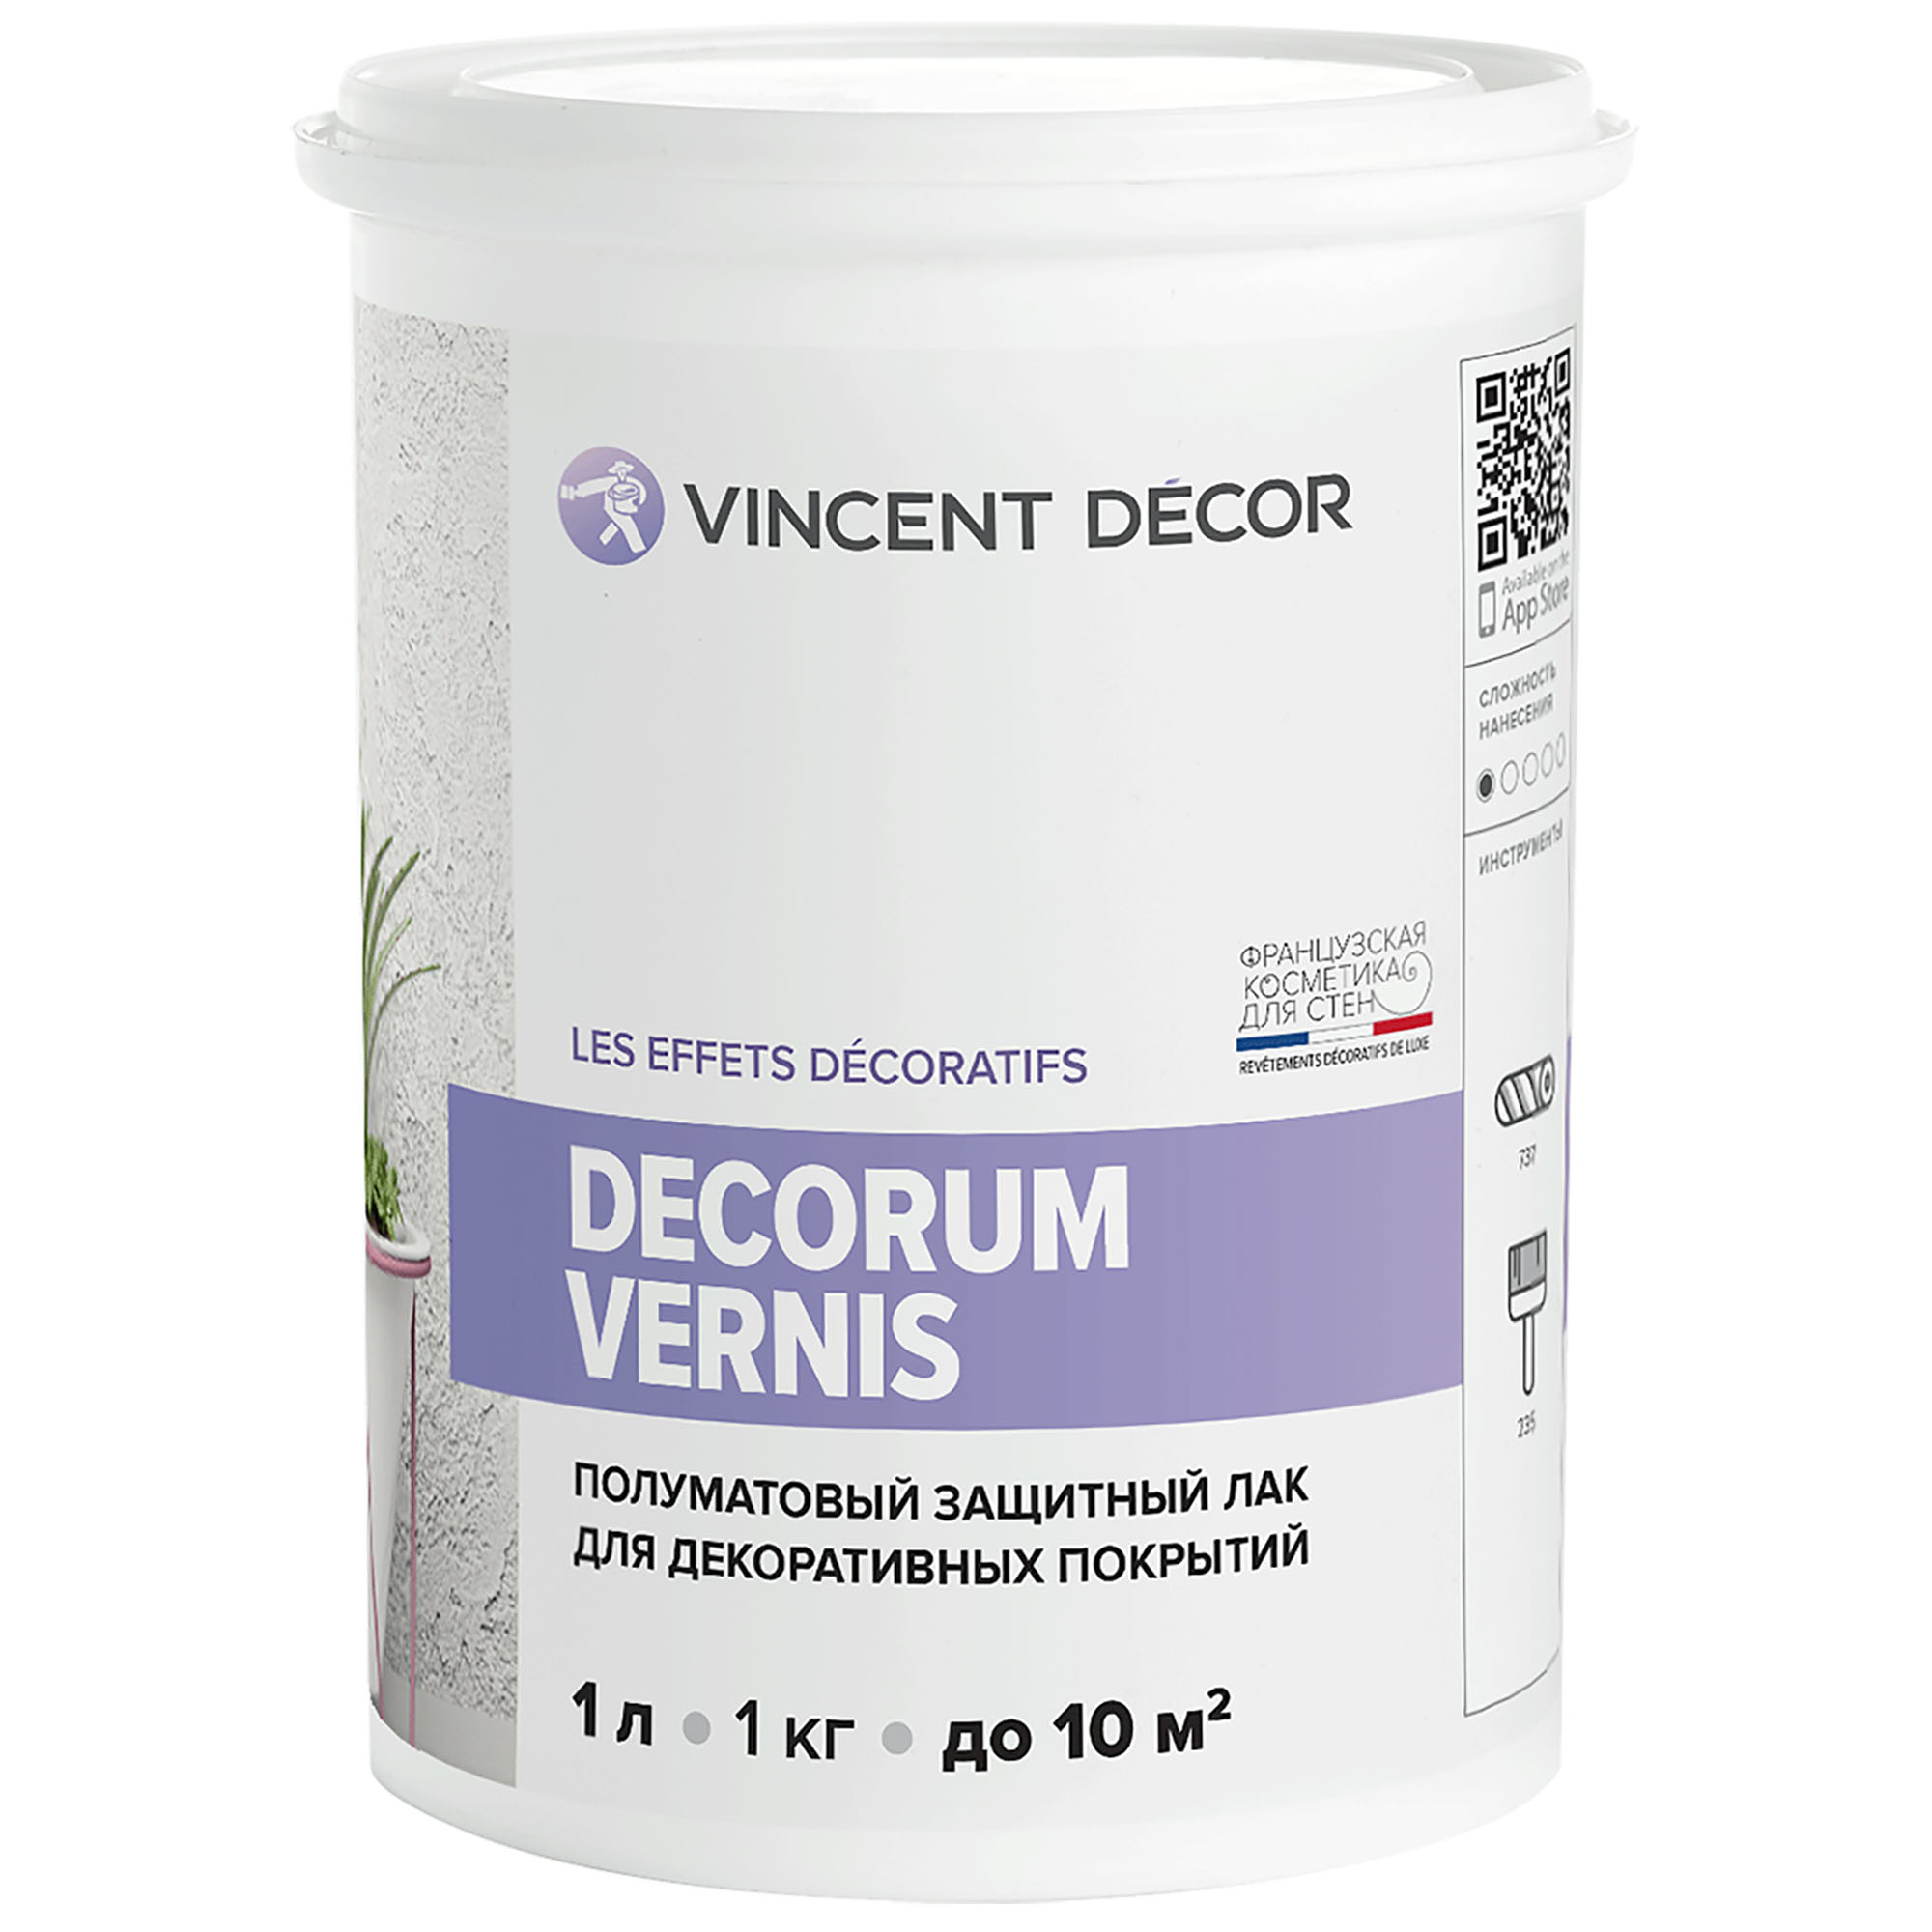 фото Лак защитный для декоративных покрытий vincent decor decorum vernis полуматовый 1 л